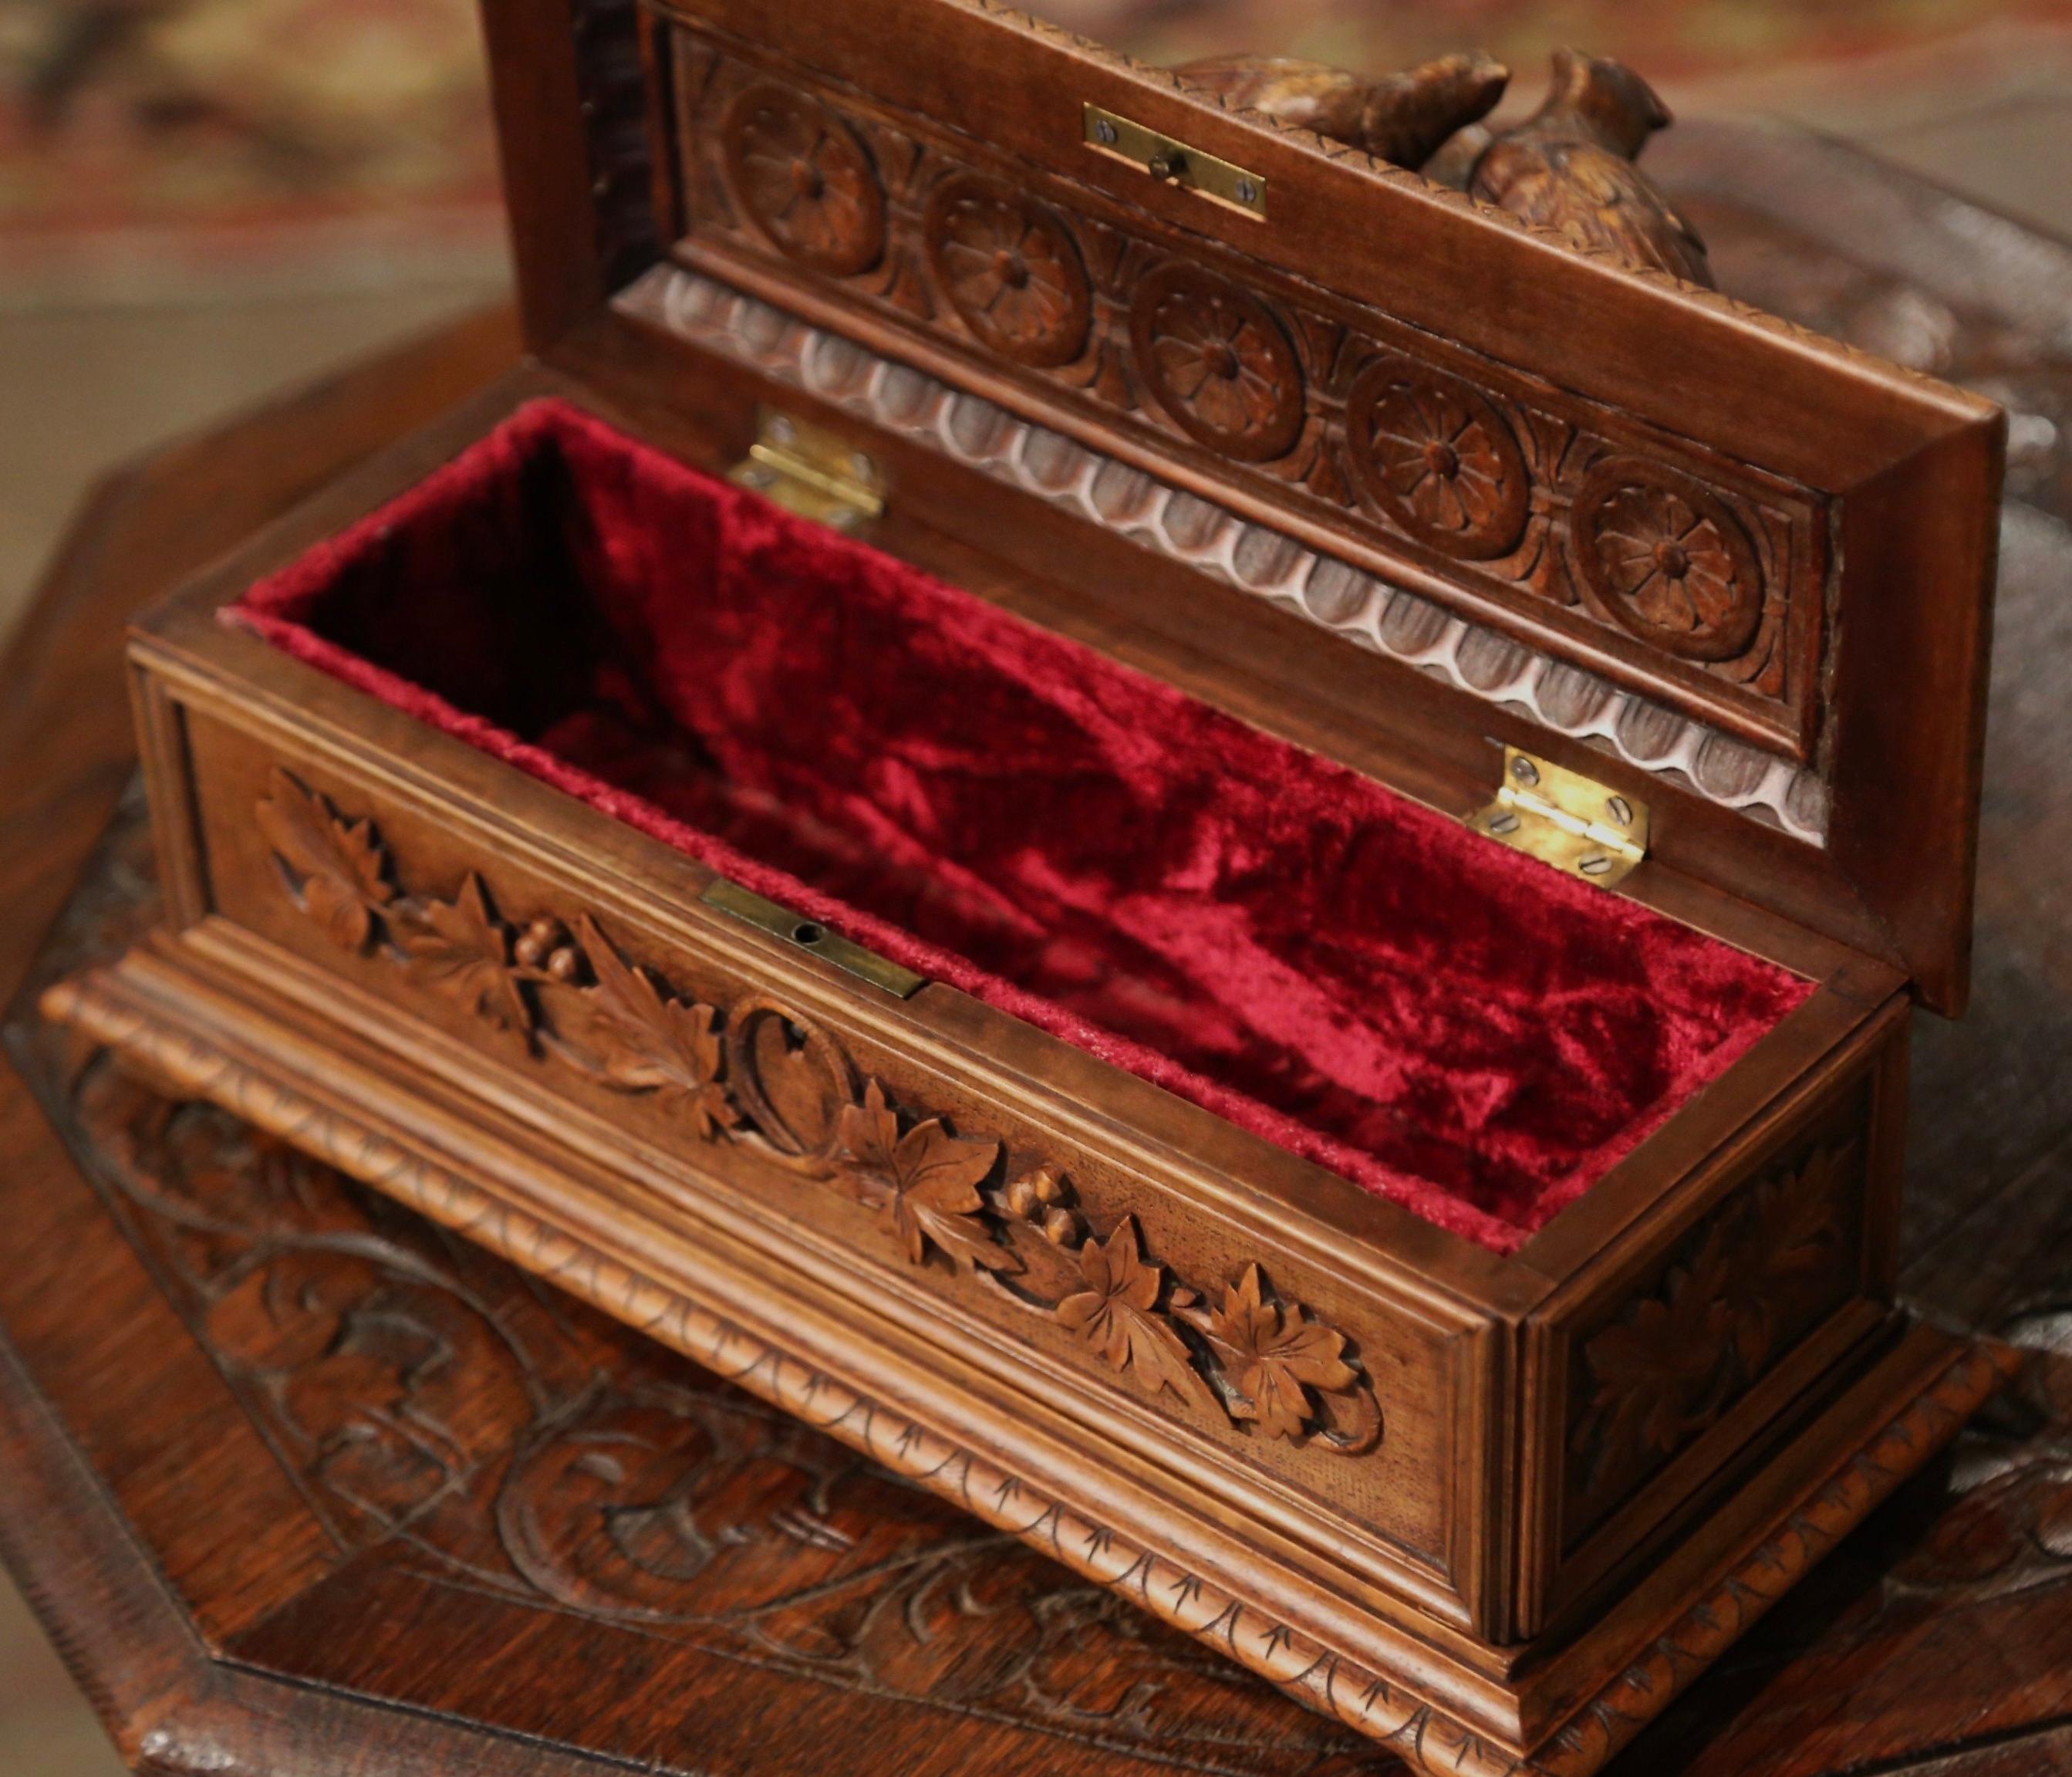 19th Century French Black Forest Carved Walnut Jewelry Box with Bird Motifs 5